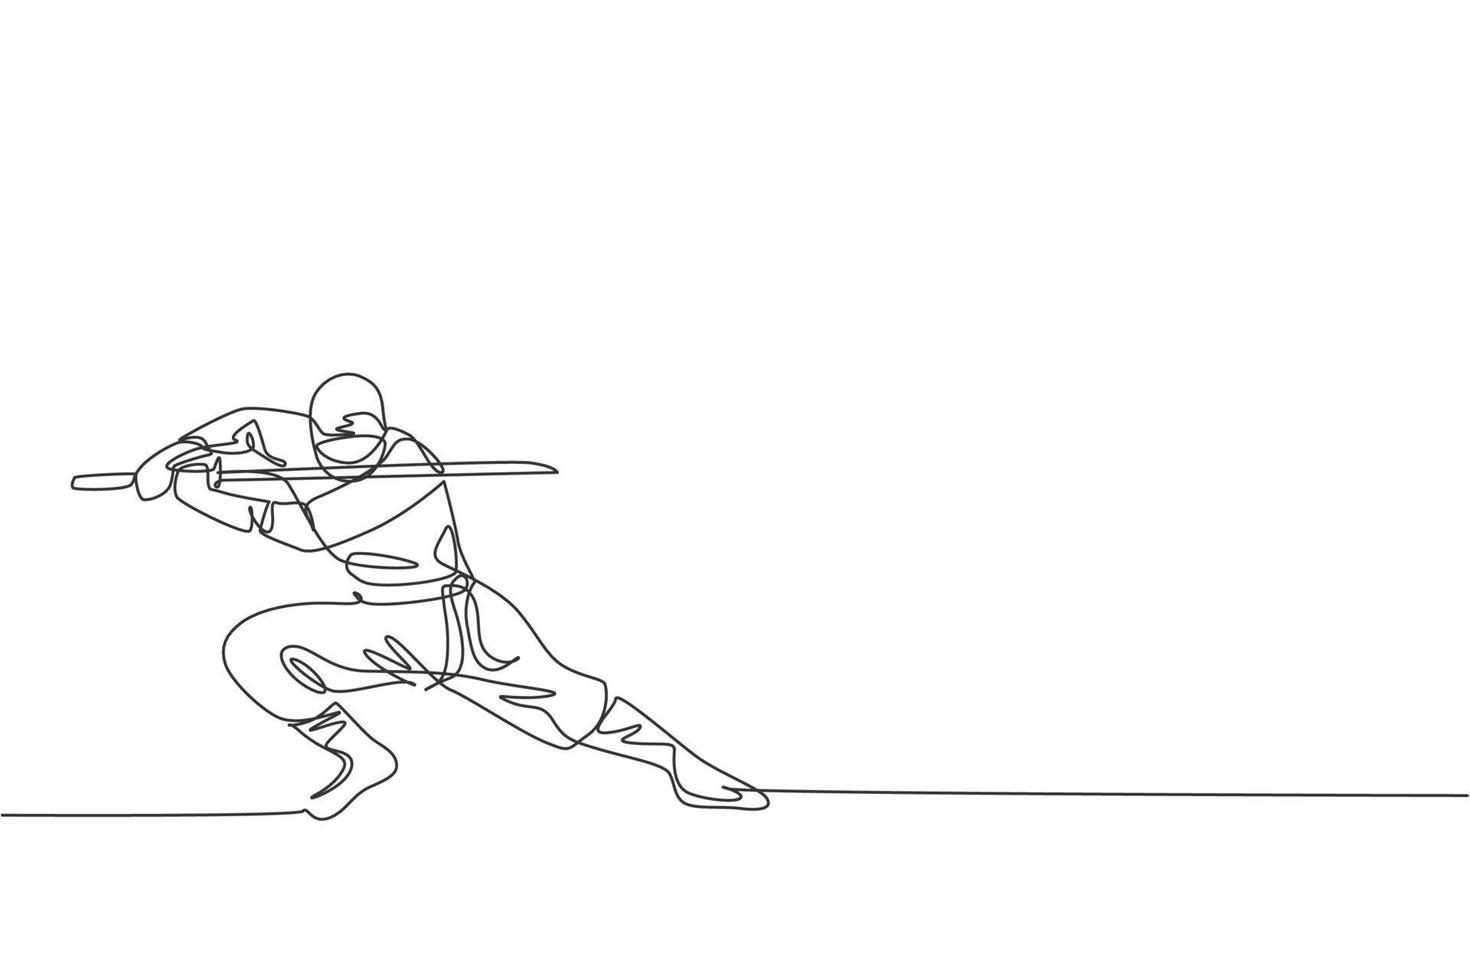 único desenho de linha contínua do jovem guerreiro ninja da cultura japonesa em traje de máscara com pose de postura de ataque. conceito de samurai de luta de arte marcial. ilustração em vetor design de desenho de uma linha na moda